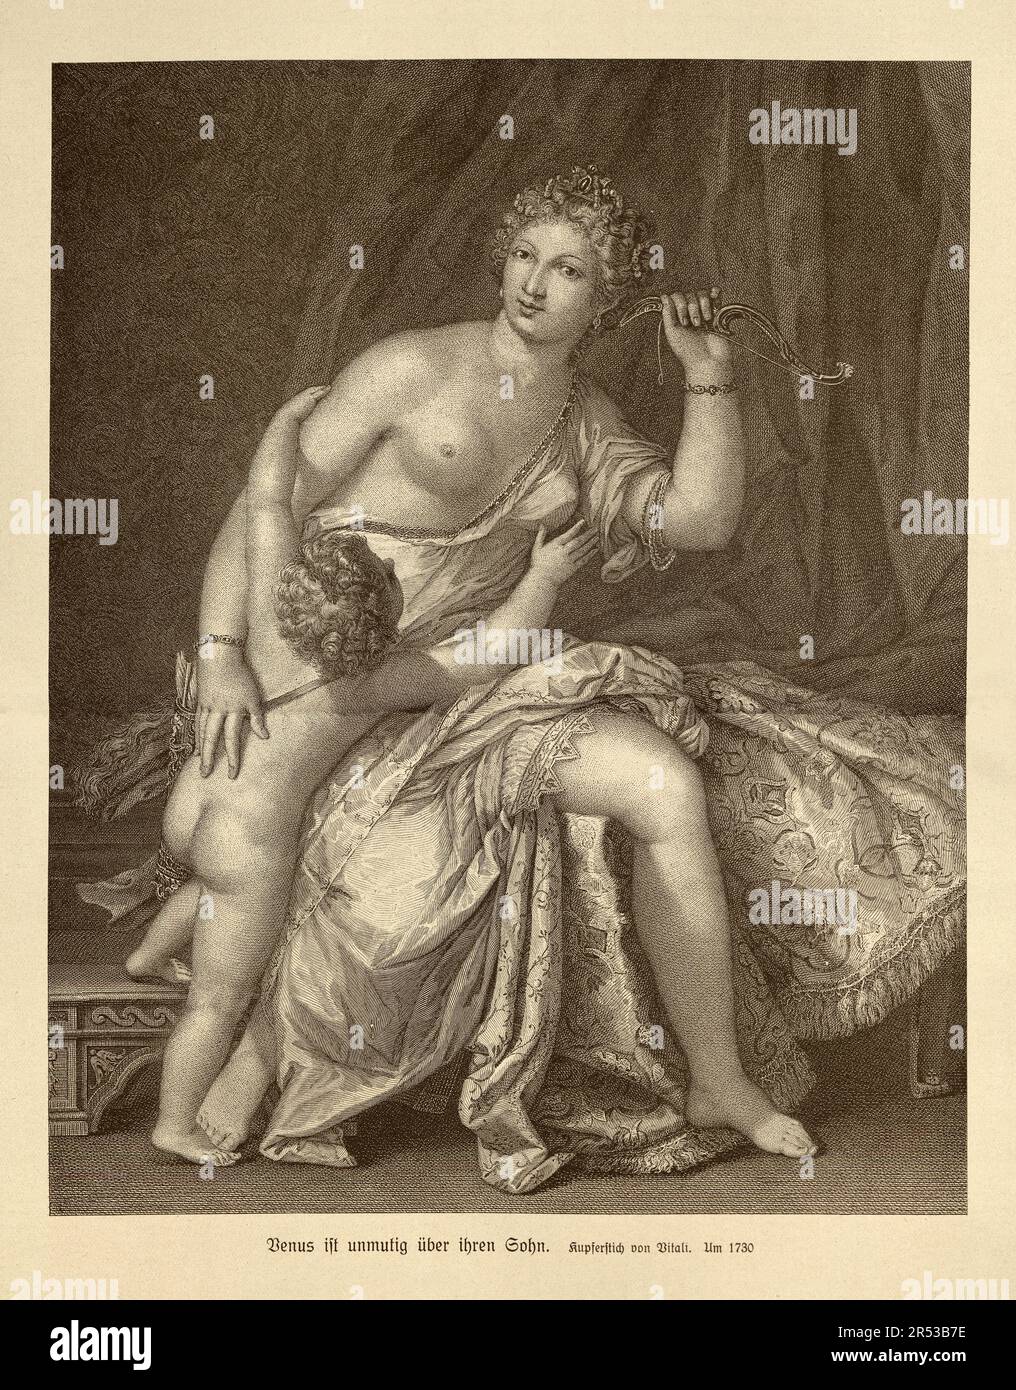 Venus desarmando a Cupido, Diosa sentada en una cama sosteniendo un arco en alto, y Cupido tratando de alcanzar el arma, grabado del siglo 18th Foto de stock